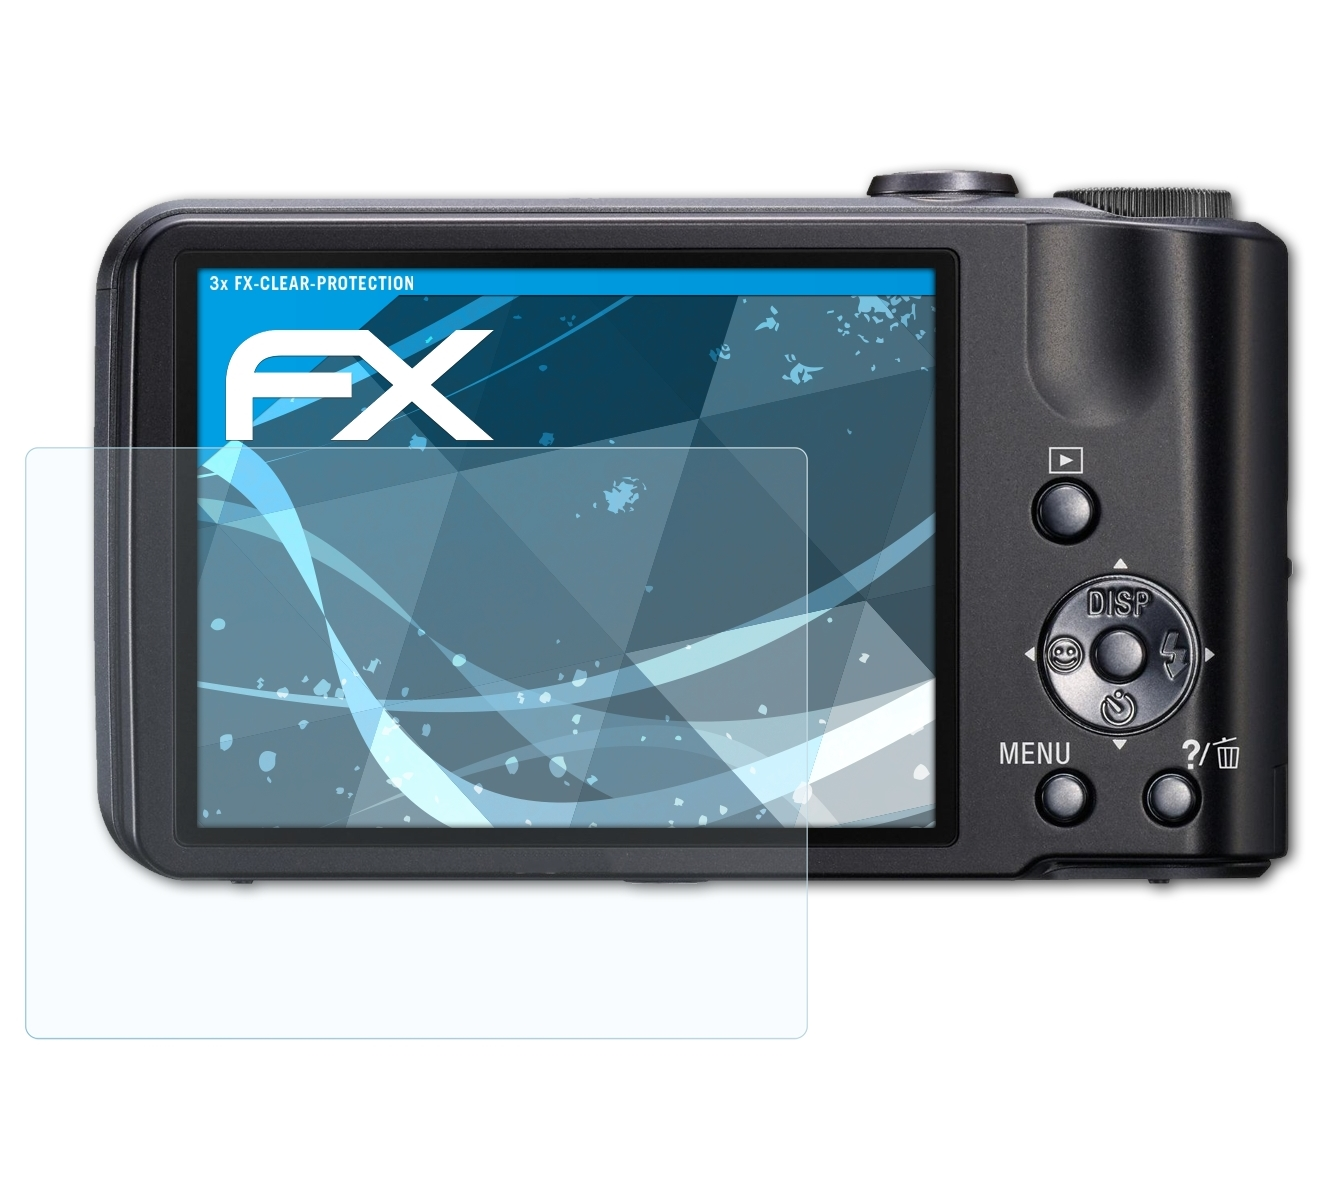 Sony ATFOLIX 3x DSC-H70) Displayschutz(für FX-Clear